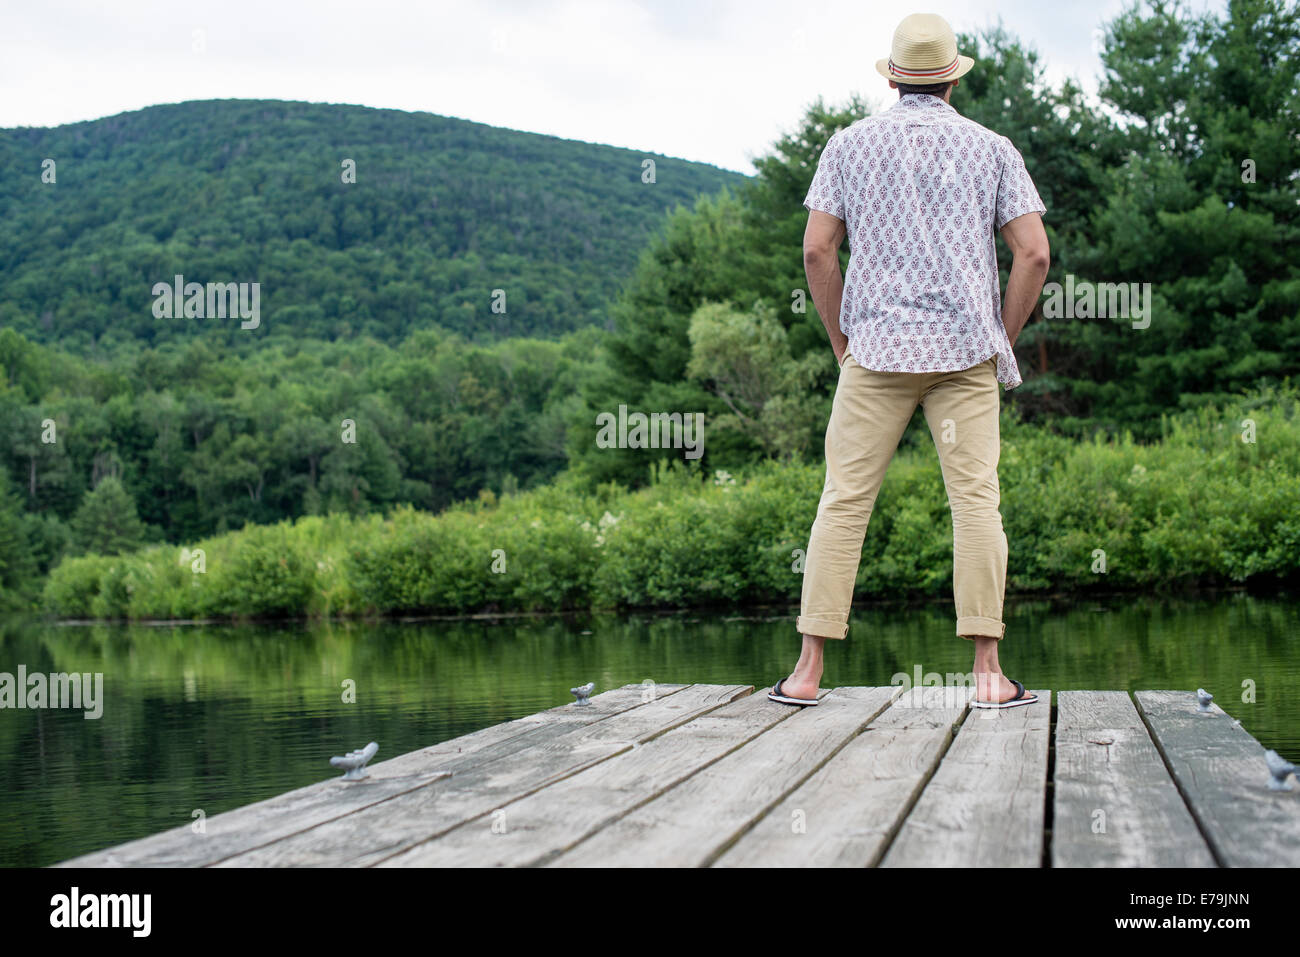 Un uomo in piedi su un molo in legno che si affaccia su di un lago calmo. Foto Stock